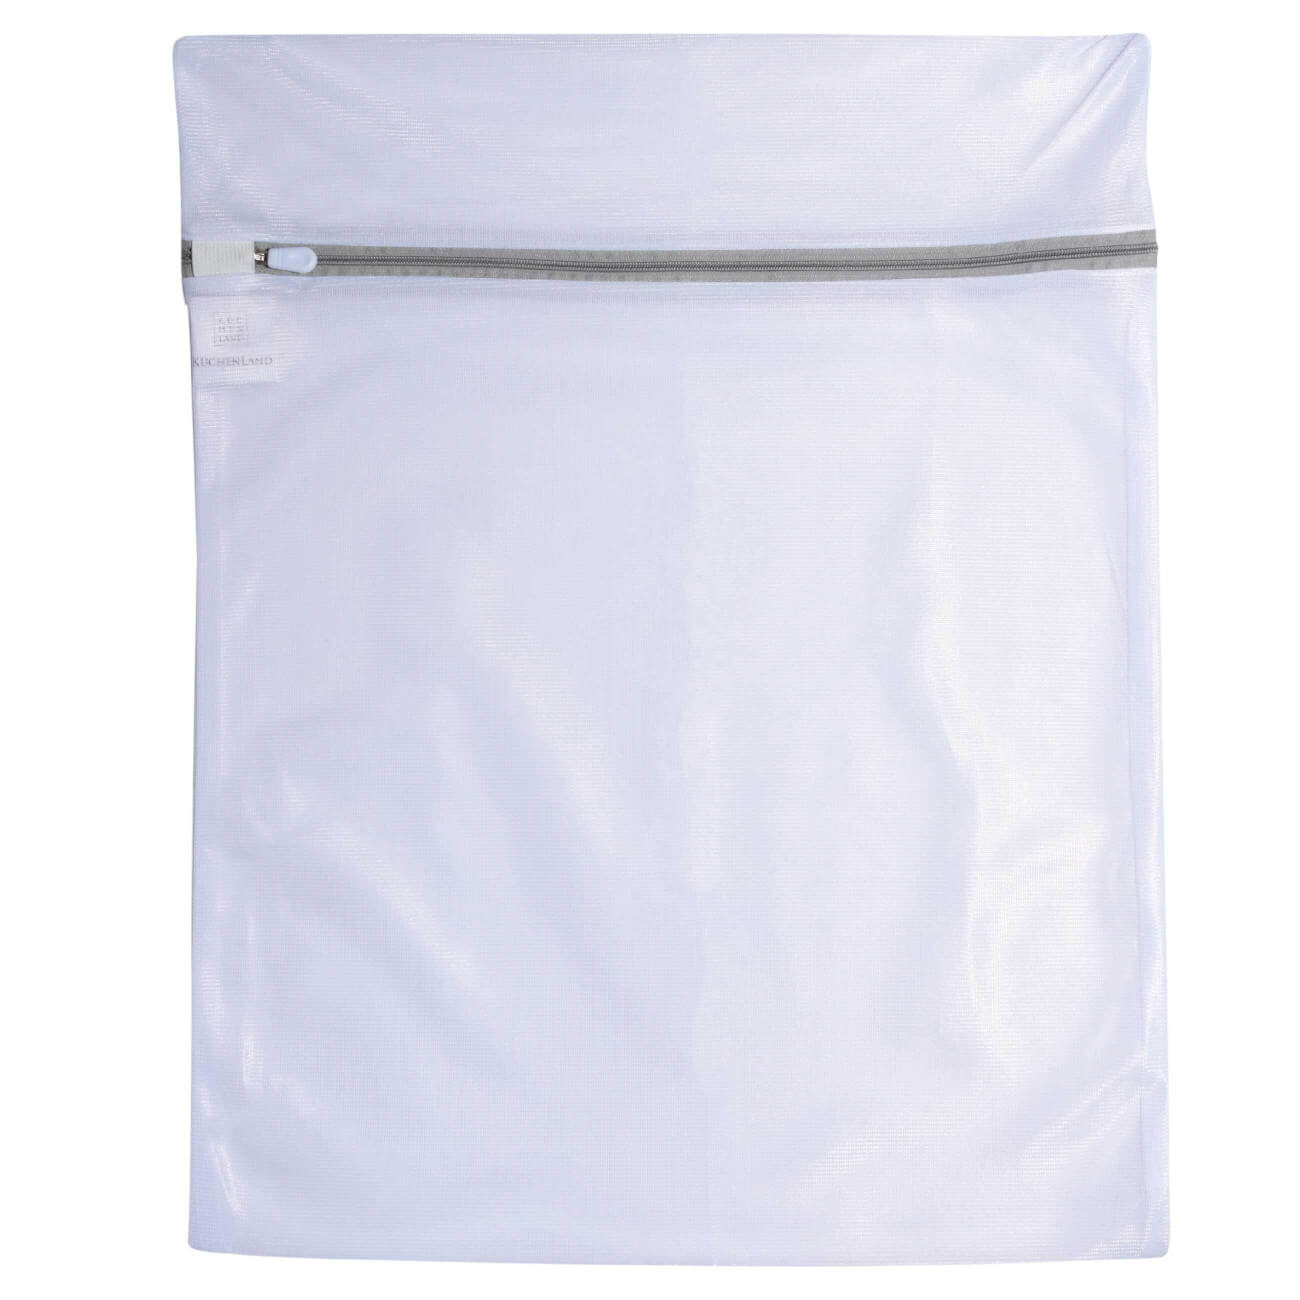 Мешок для стирки одежды, 40х50 см, полиэстер, бело-серый, Safety plus изображение № 1